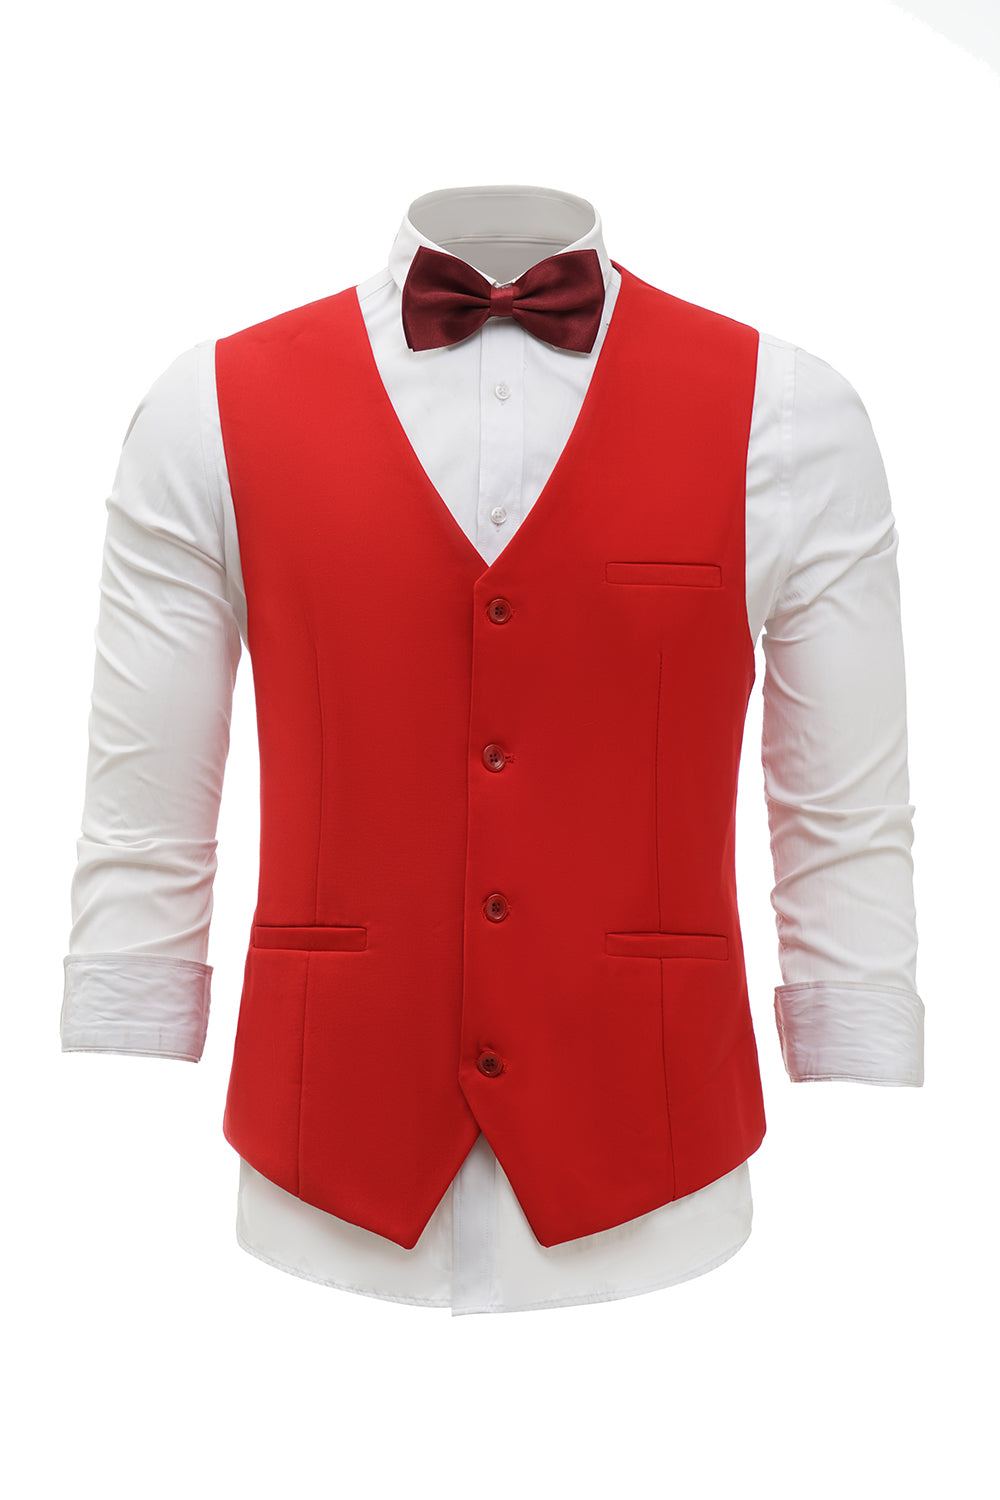 Rotes einreihiges Schal Revers Herren Anzug Weste